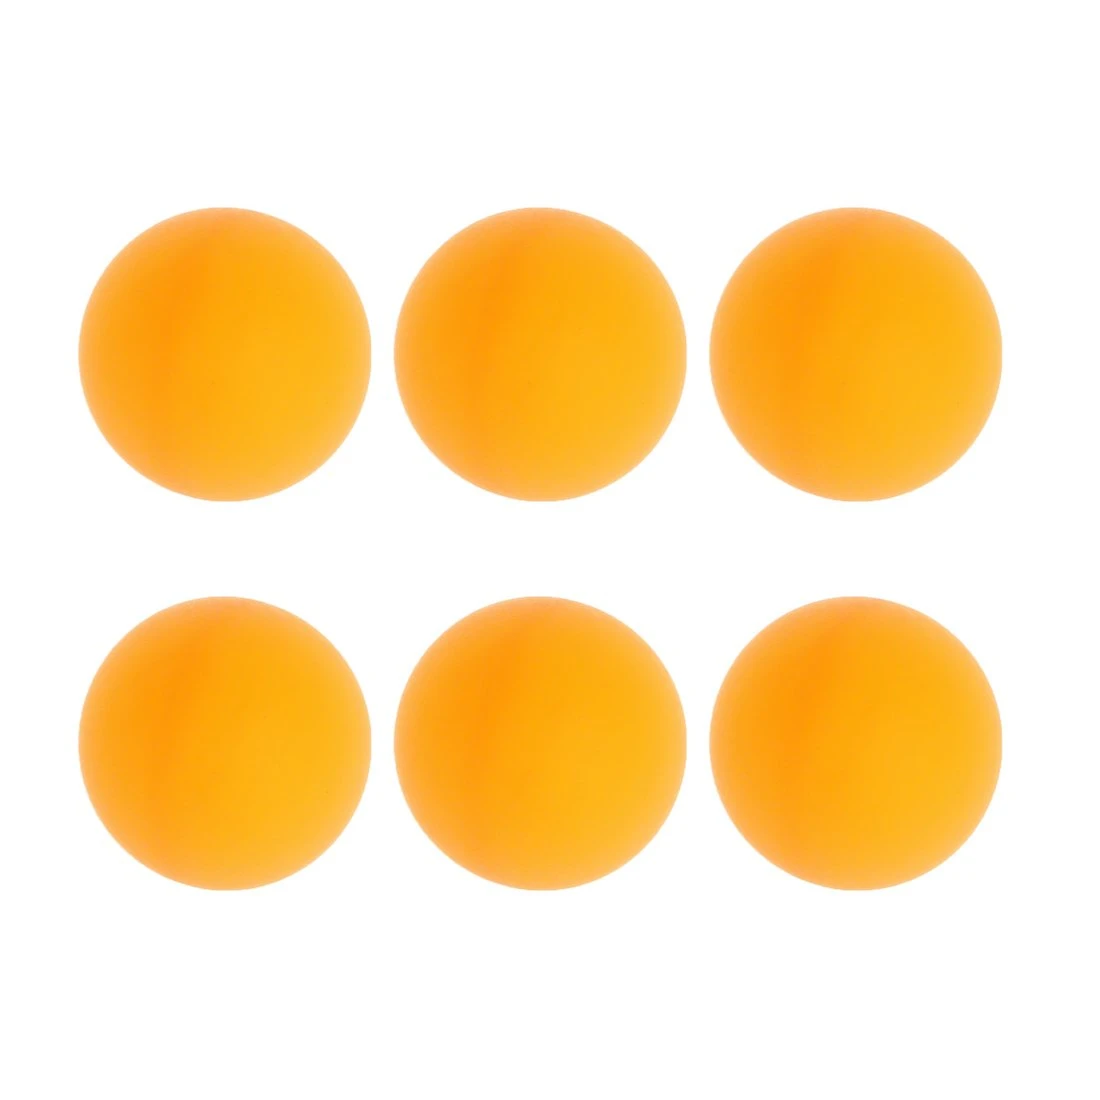 Шарики для настольного тенниса 6 штук, оранж. 636178